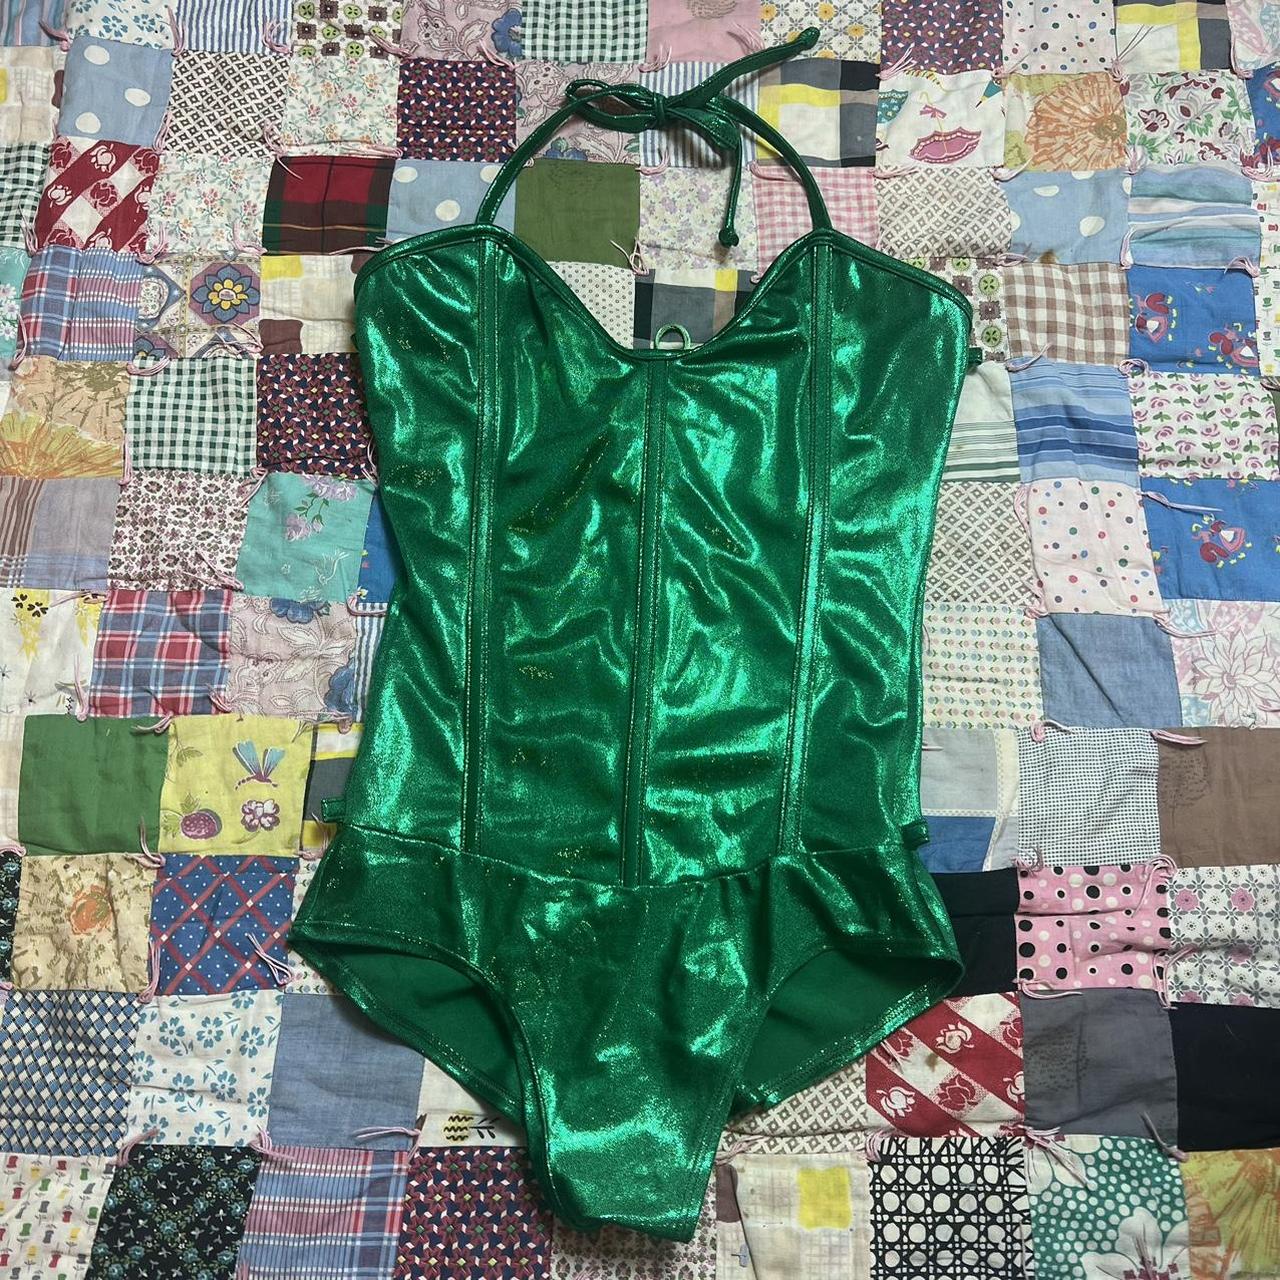 Green bodysuit-corset - Depop